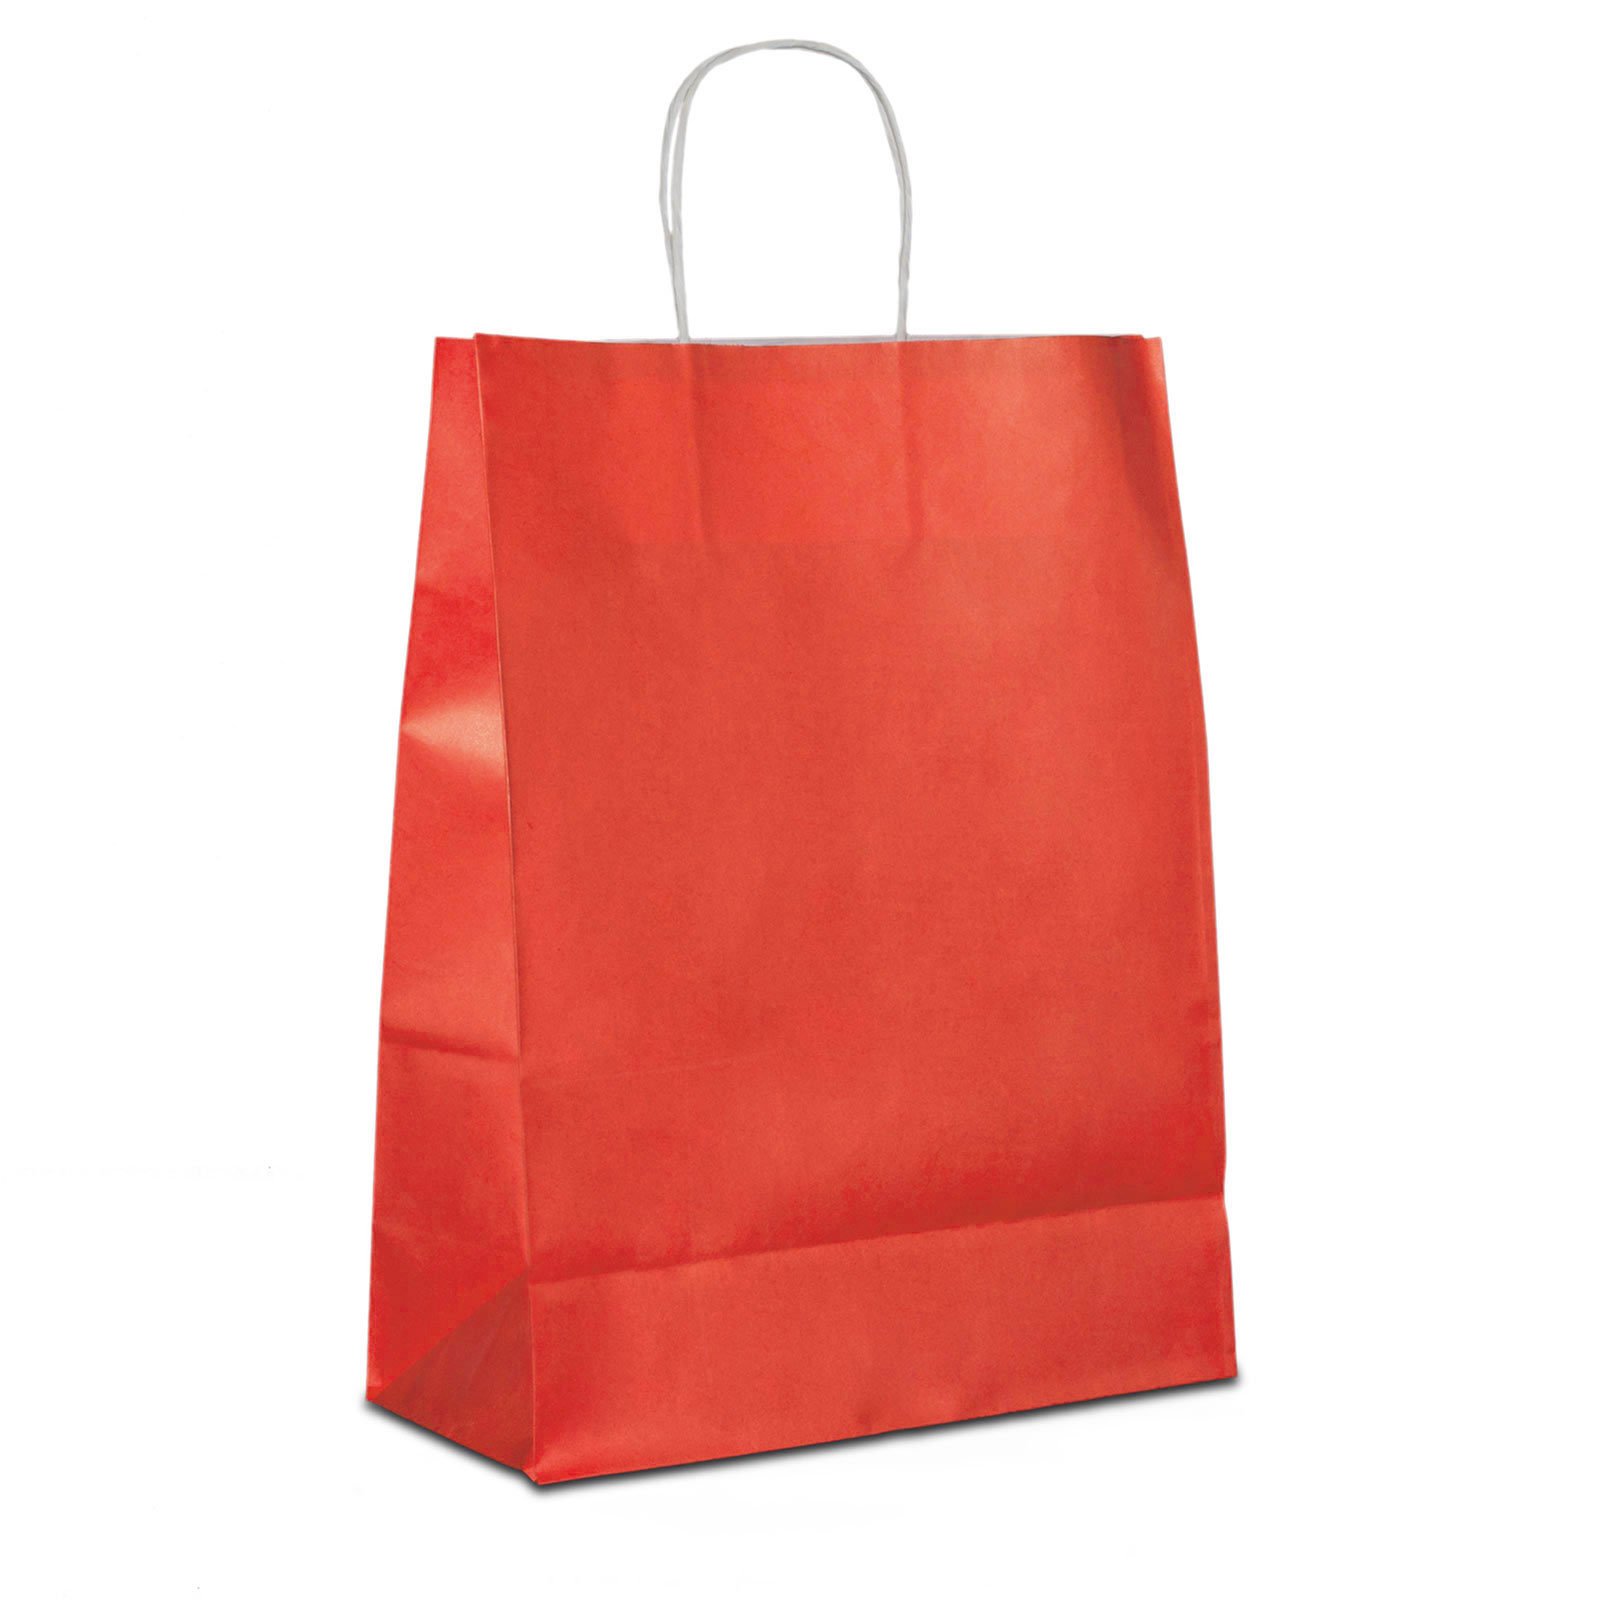 Papiertüten rot mit Kordel-Henkel I 300 Stk. 18+08x22cm I Papiertragetasche für Einzelhandel, Weihnachten, Mitbringsel, TO-GO I Geschenktüten aus Kraftpapier I HUTNER